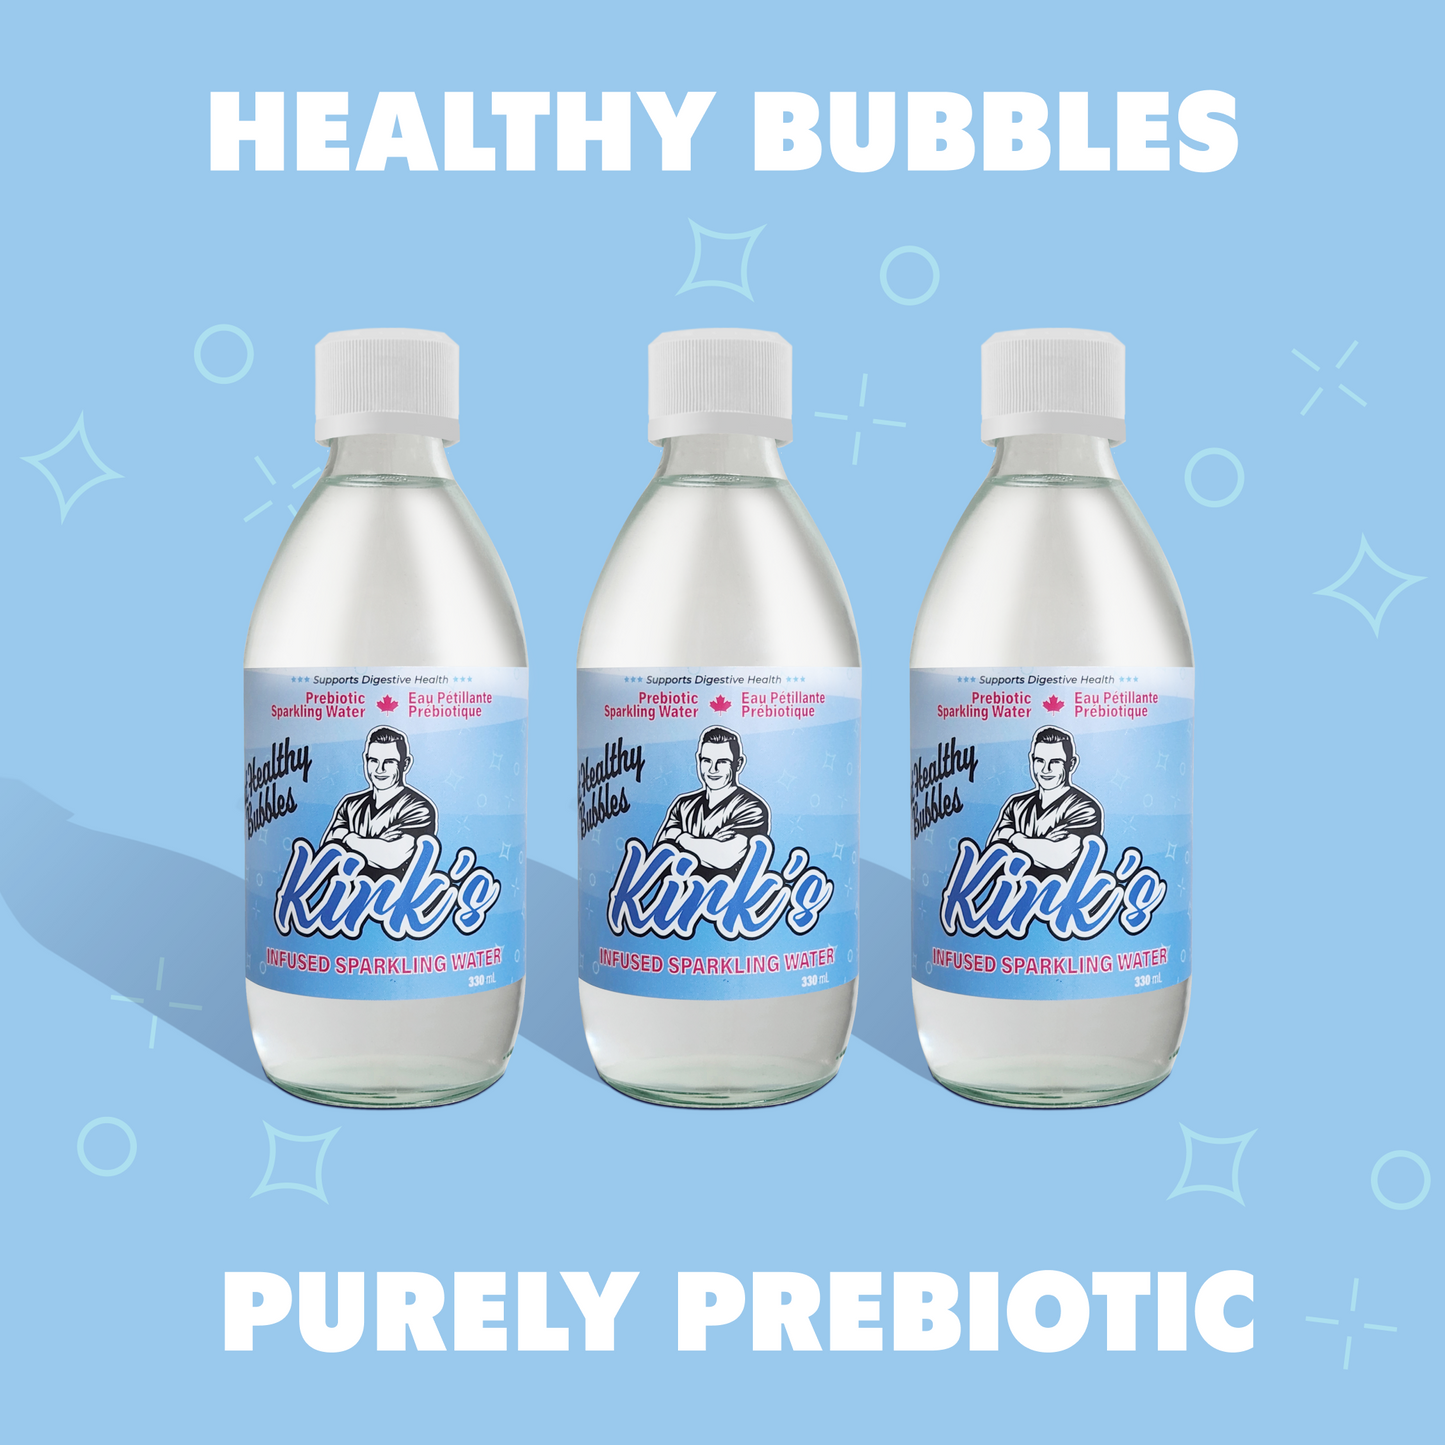 Image of multiple sparkling flavored prebiotic soda bottles